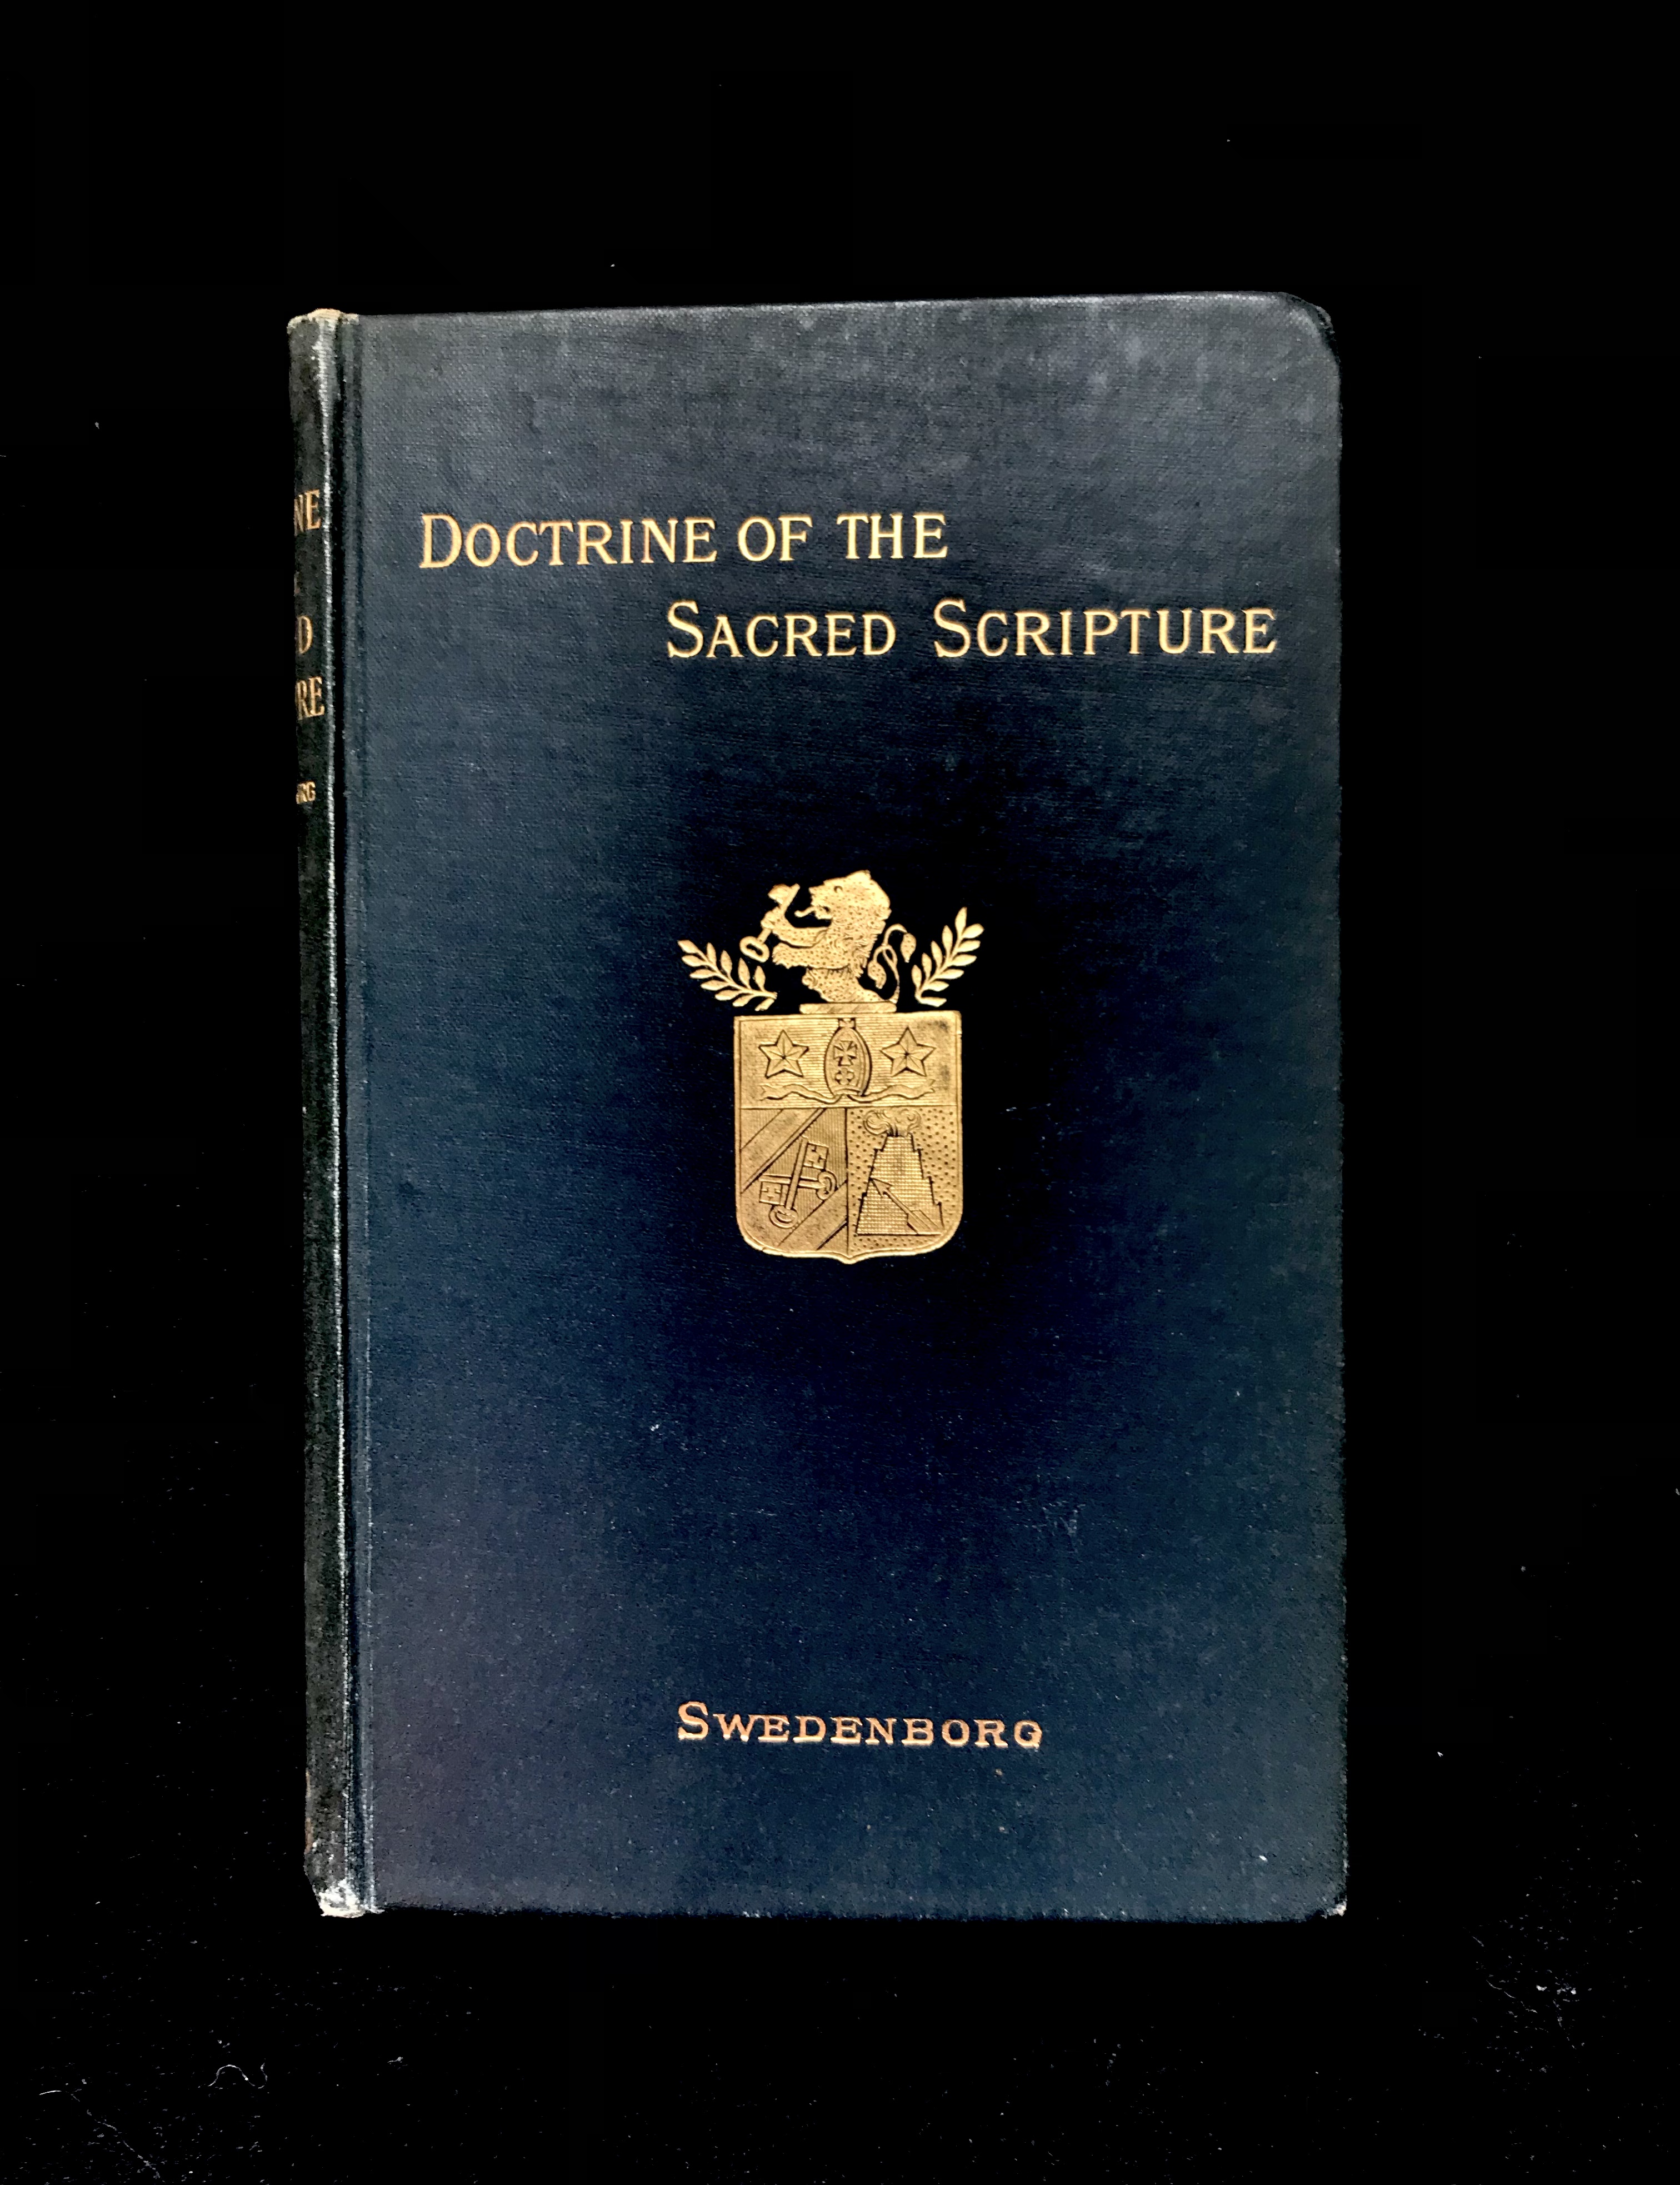 Doctrine Of The Sacred Scripture by Emanuel Swedenborg